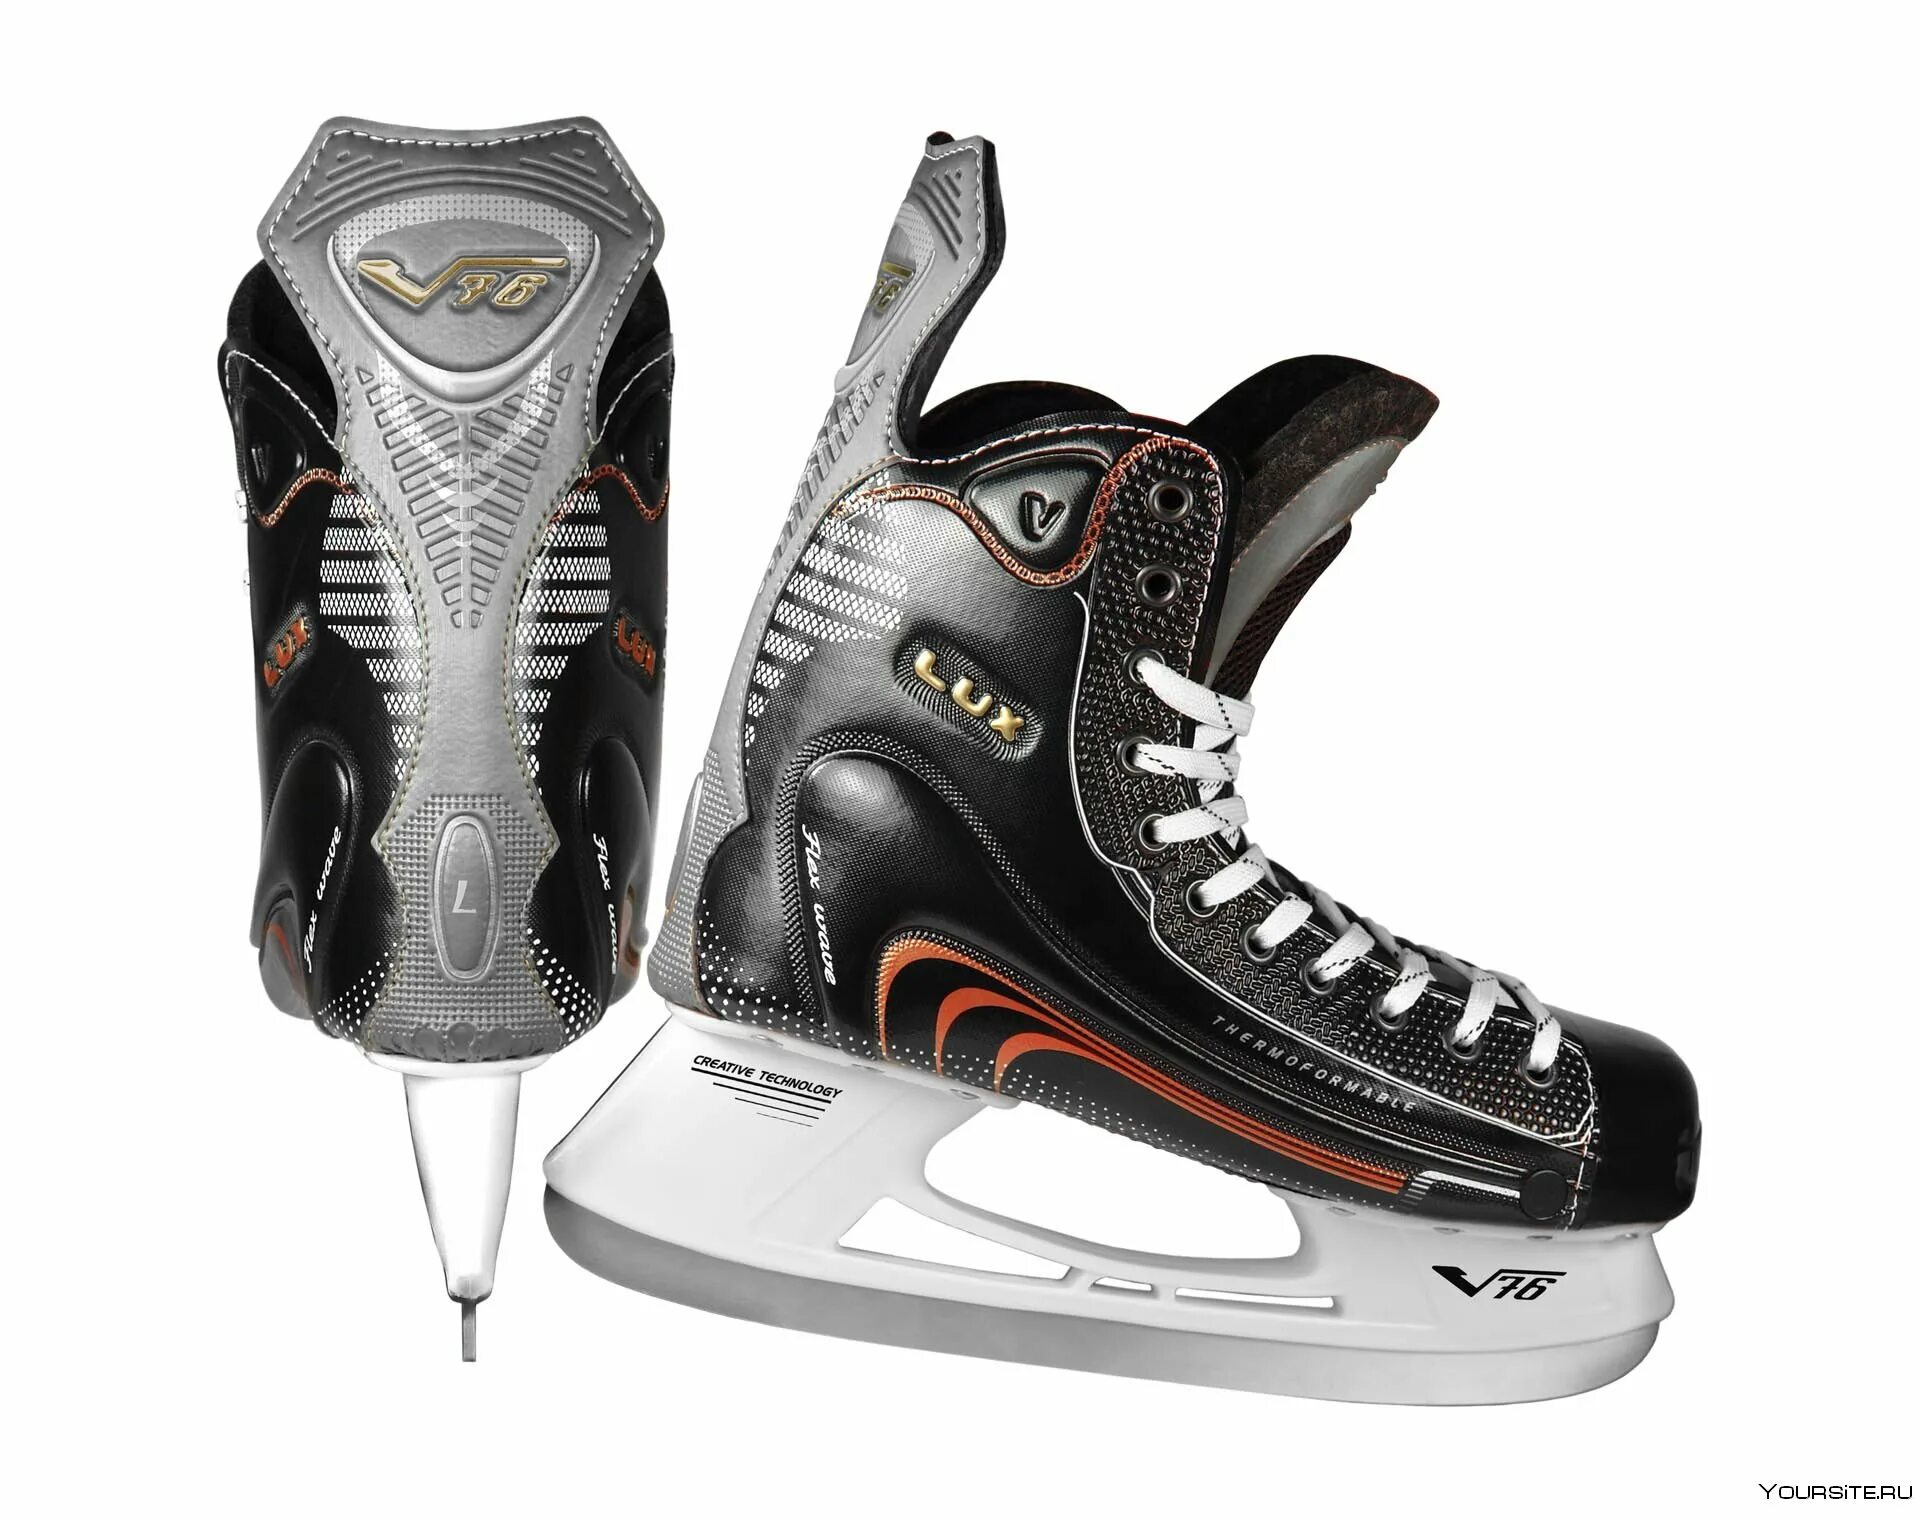 Хоккейные коньки v76 Lux-s. Хоккейные коньки v76 Lux Pro-v. Коньки хоккейные v76 5.11. Коньки Bauer v76.